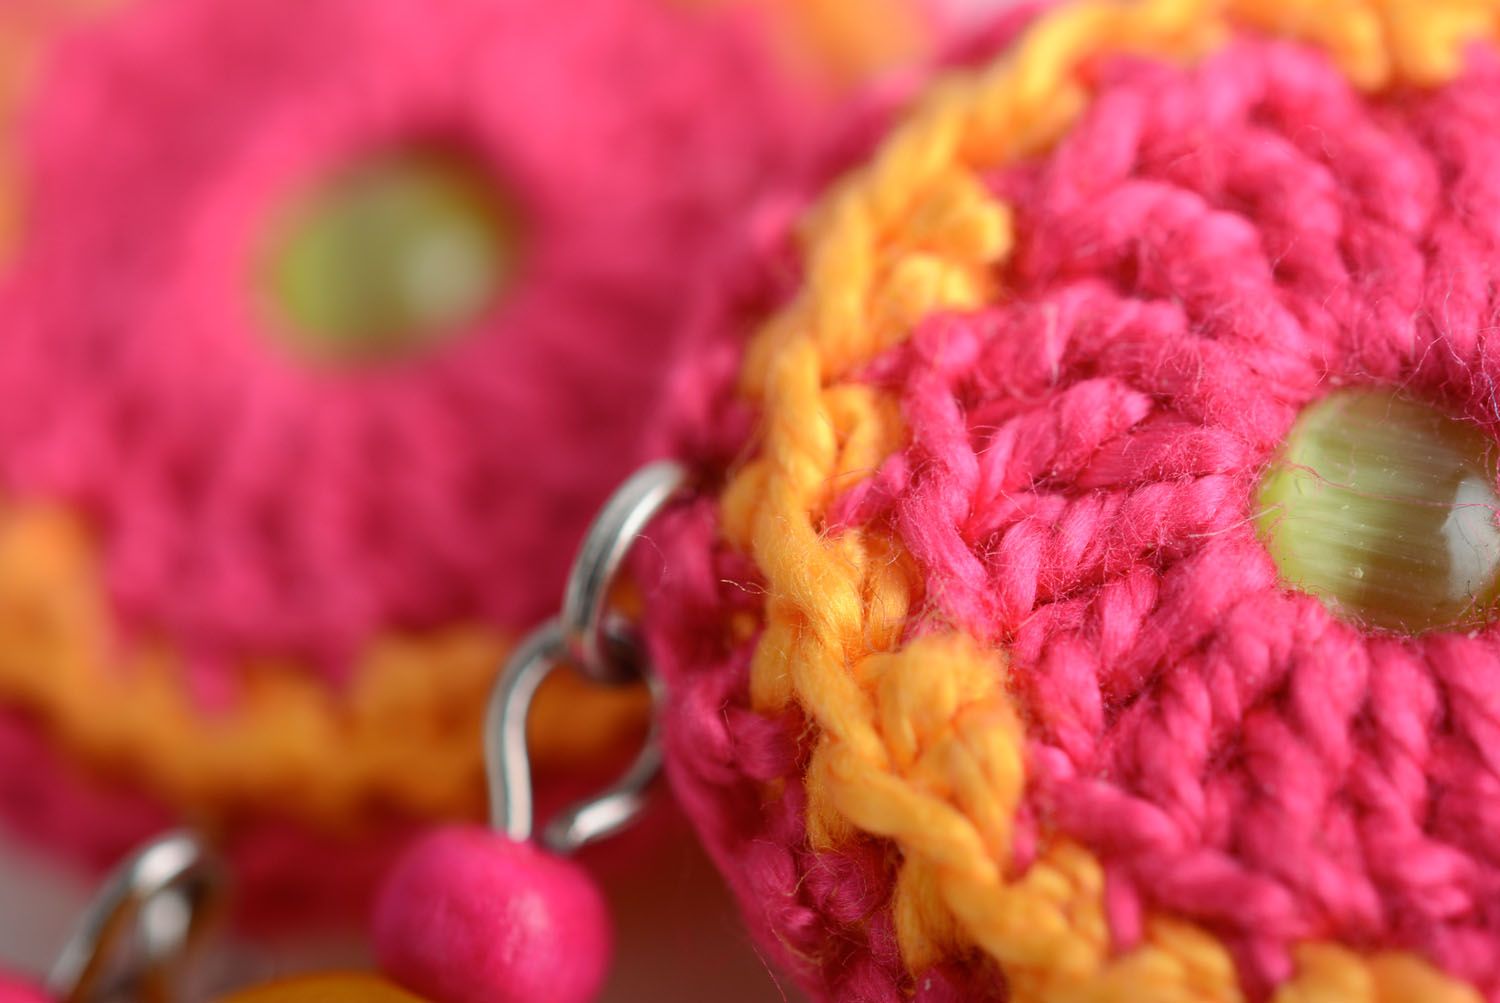 Homemade crocheted over earrings photo 4